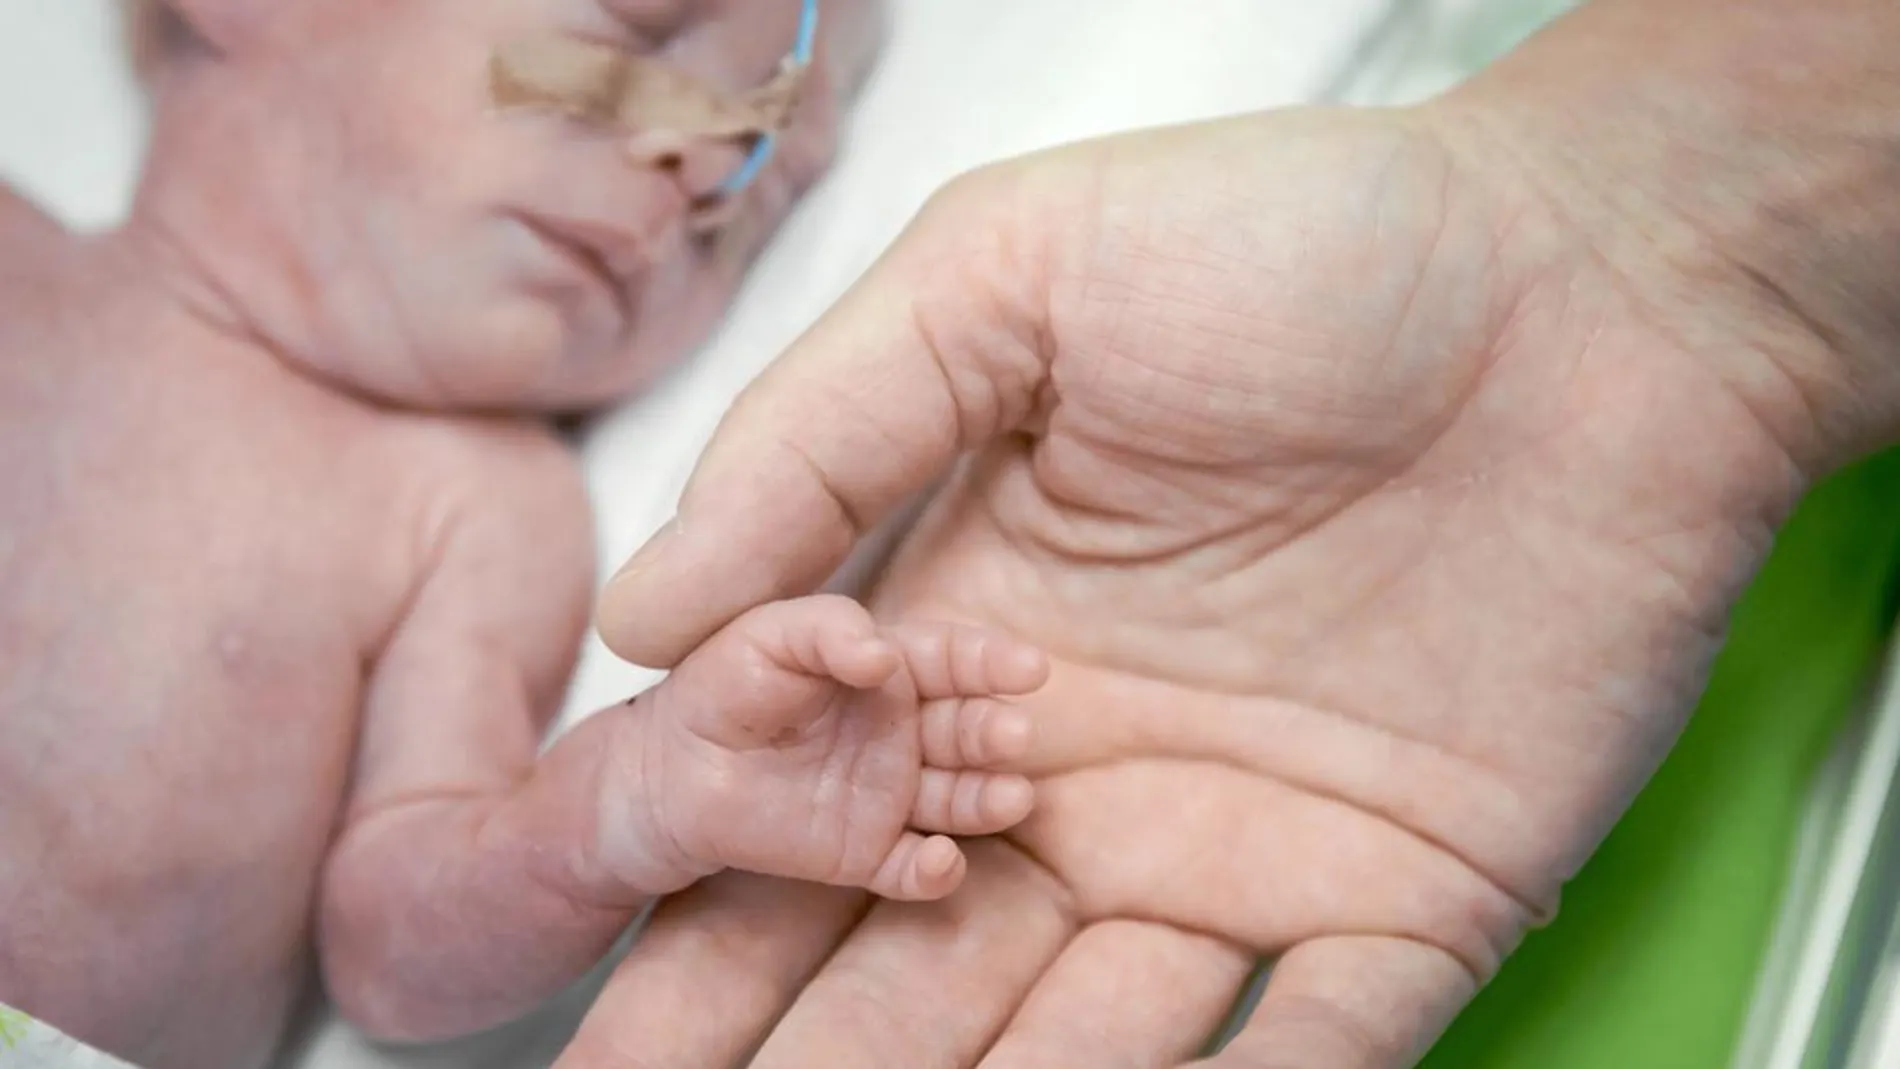 Anualmente nacen en el mundo 15 millones de prematuros